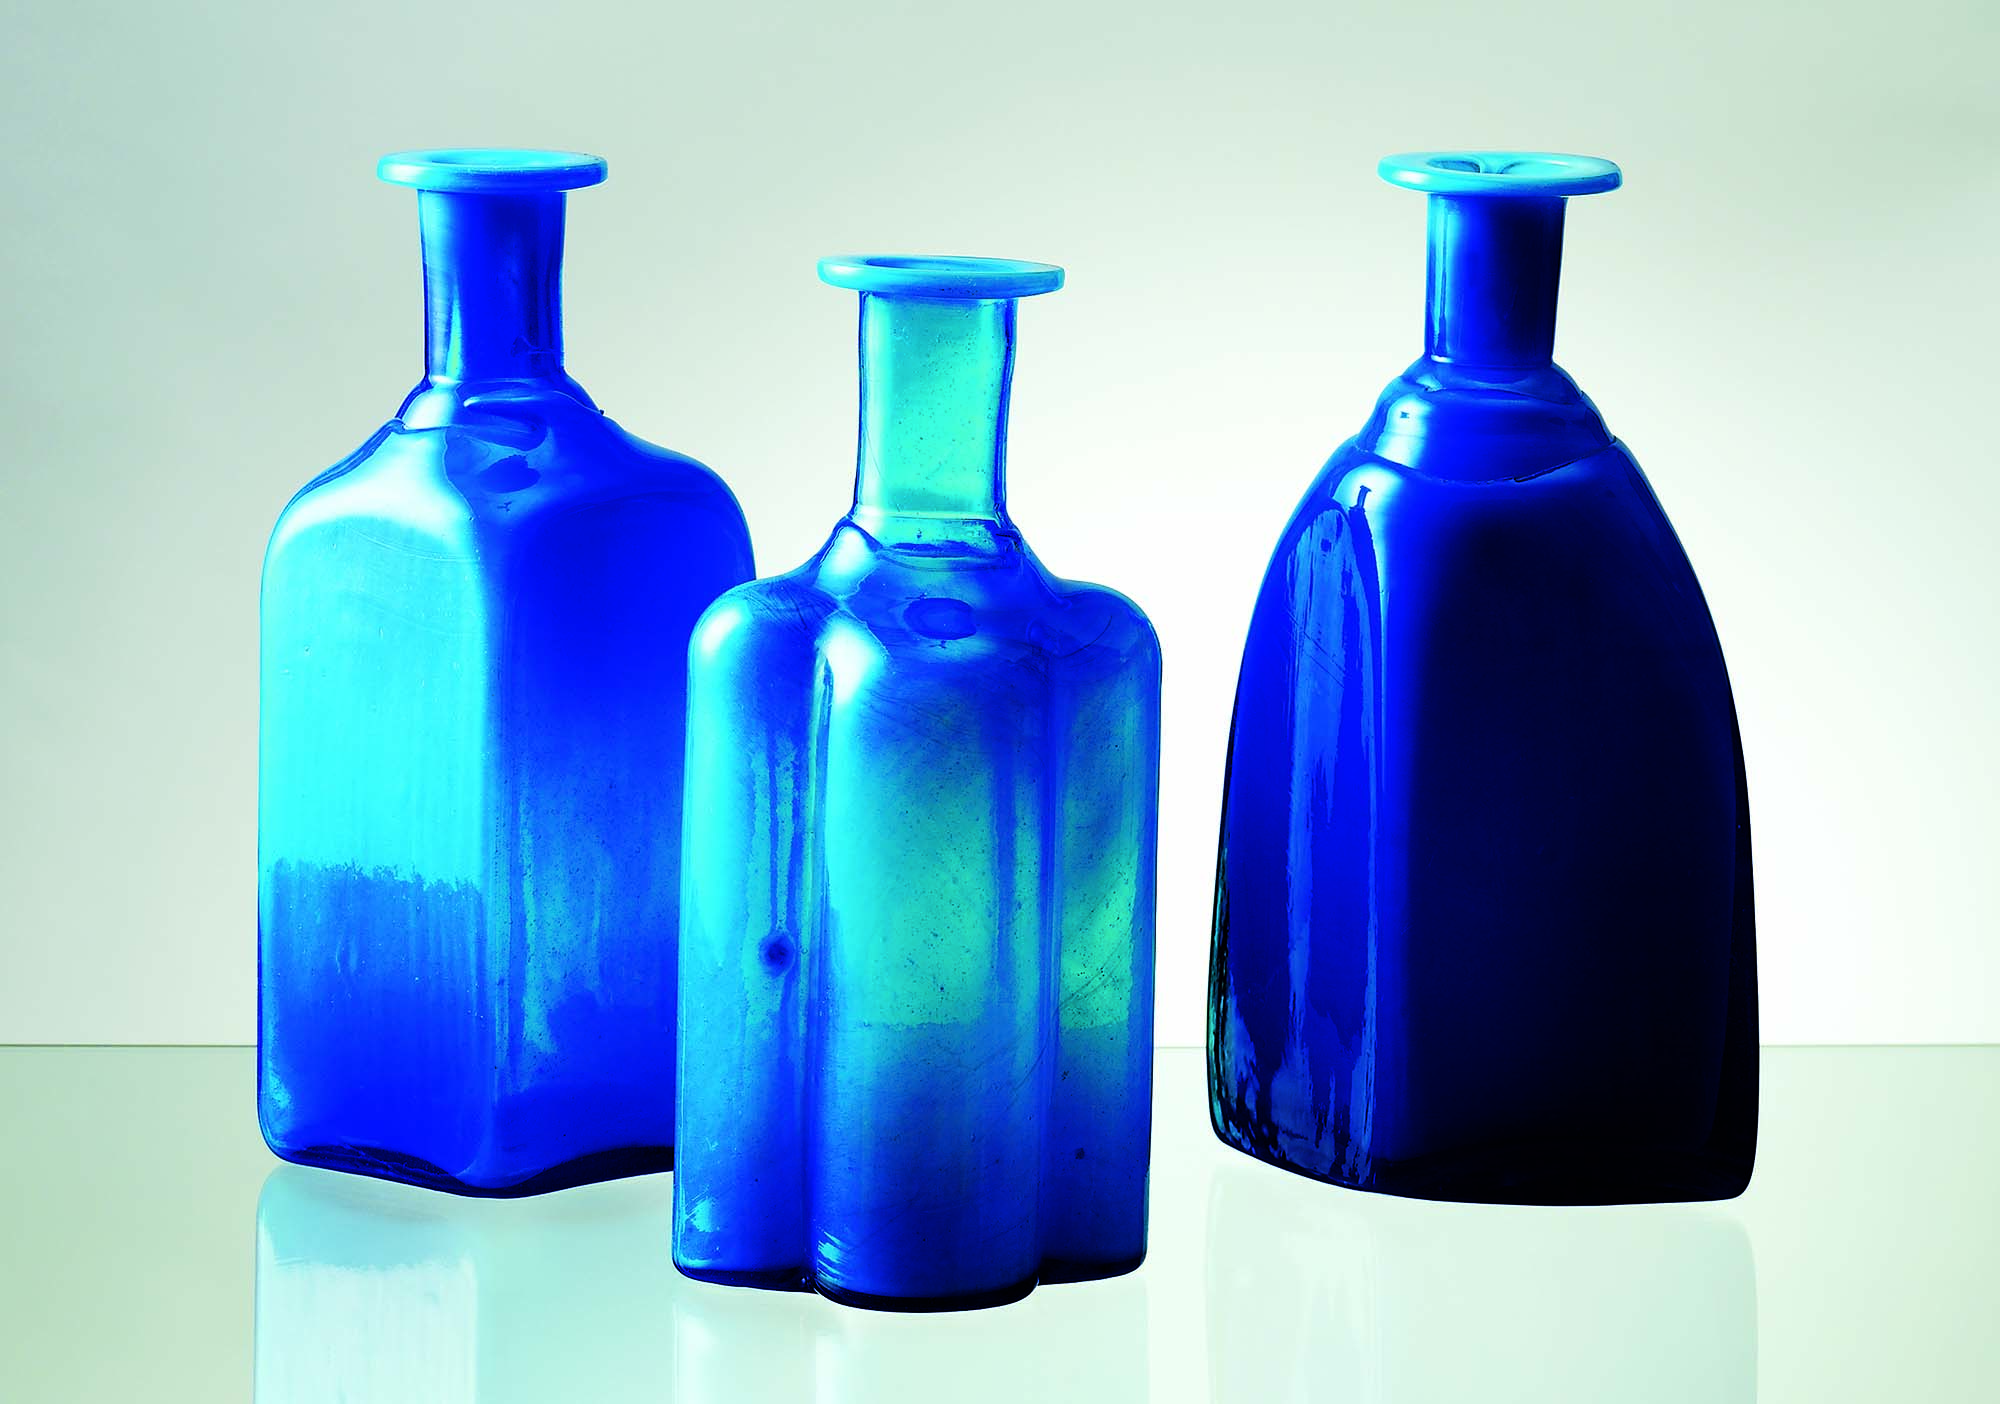 Three blue vases